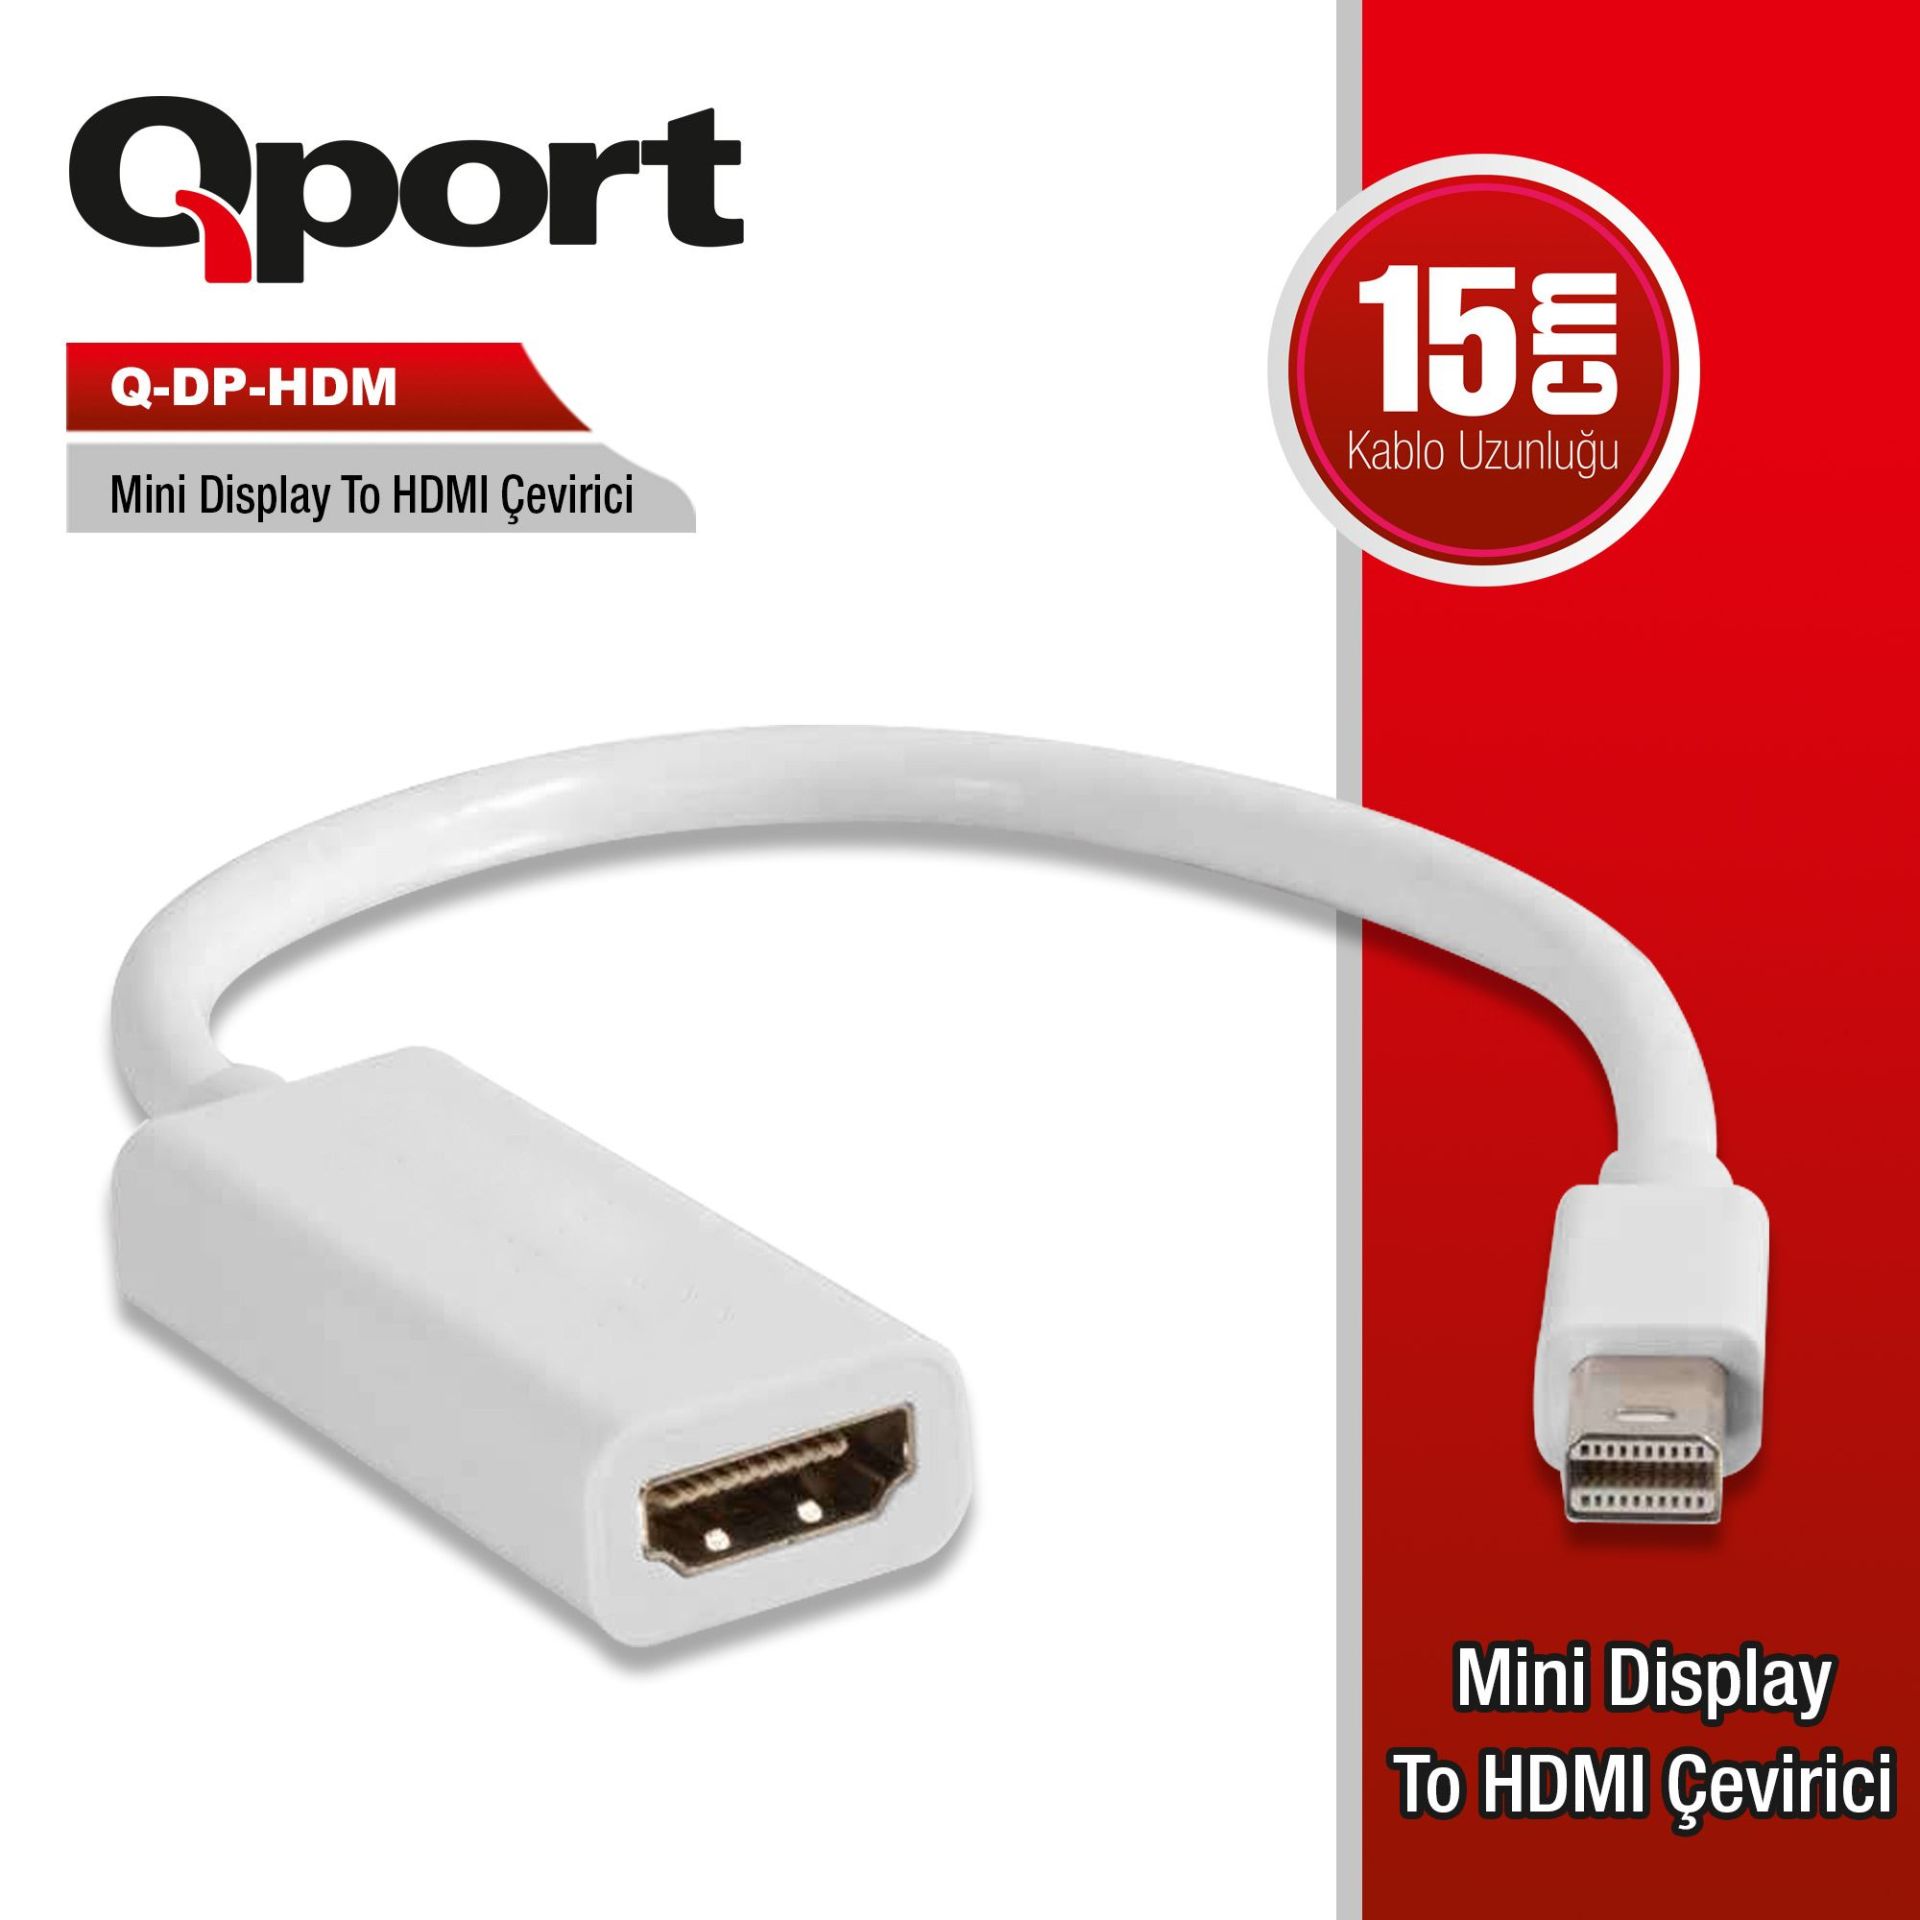 QPORT Q-DP-HDM MINI DISPLAY TO HDMI CONVERTER